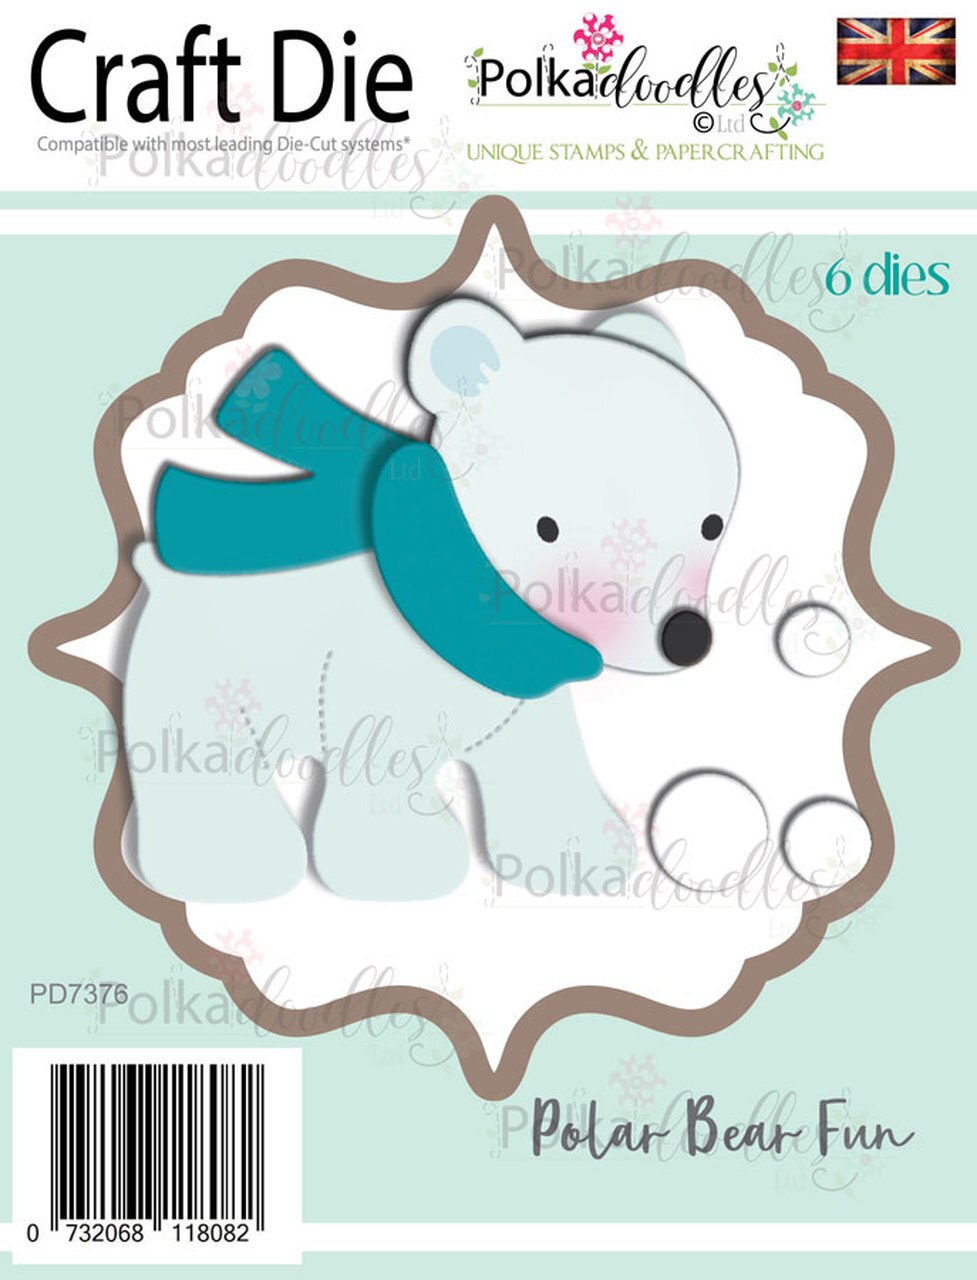 Polkadoodles - Dies - Polar Bear Fun